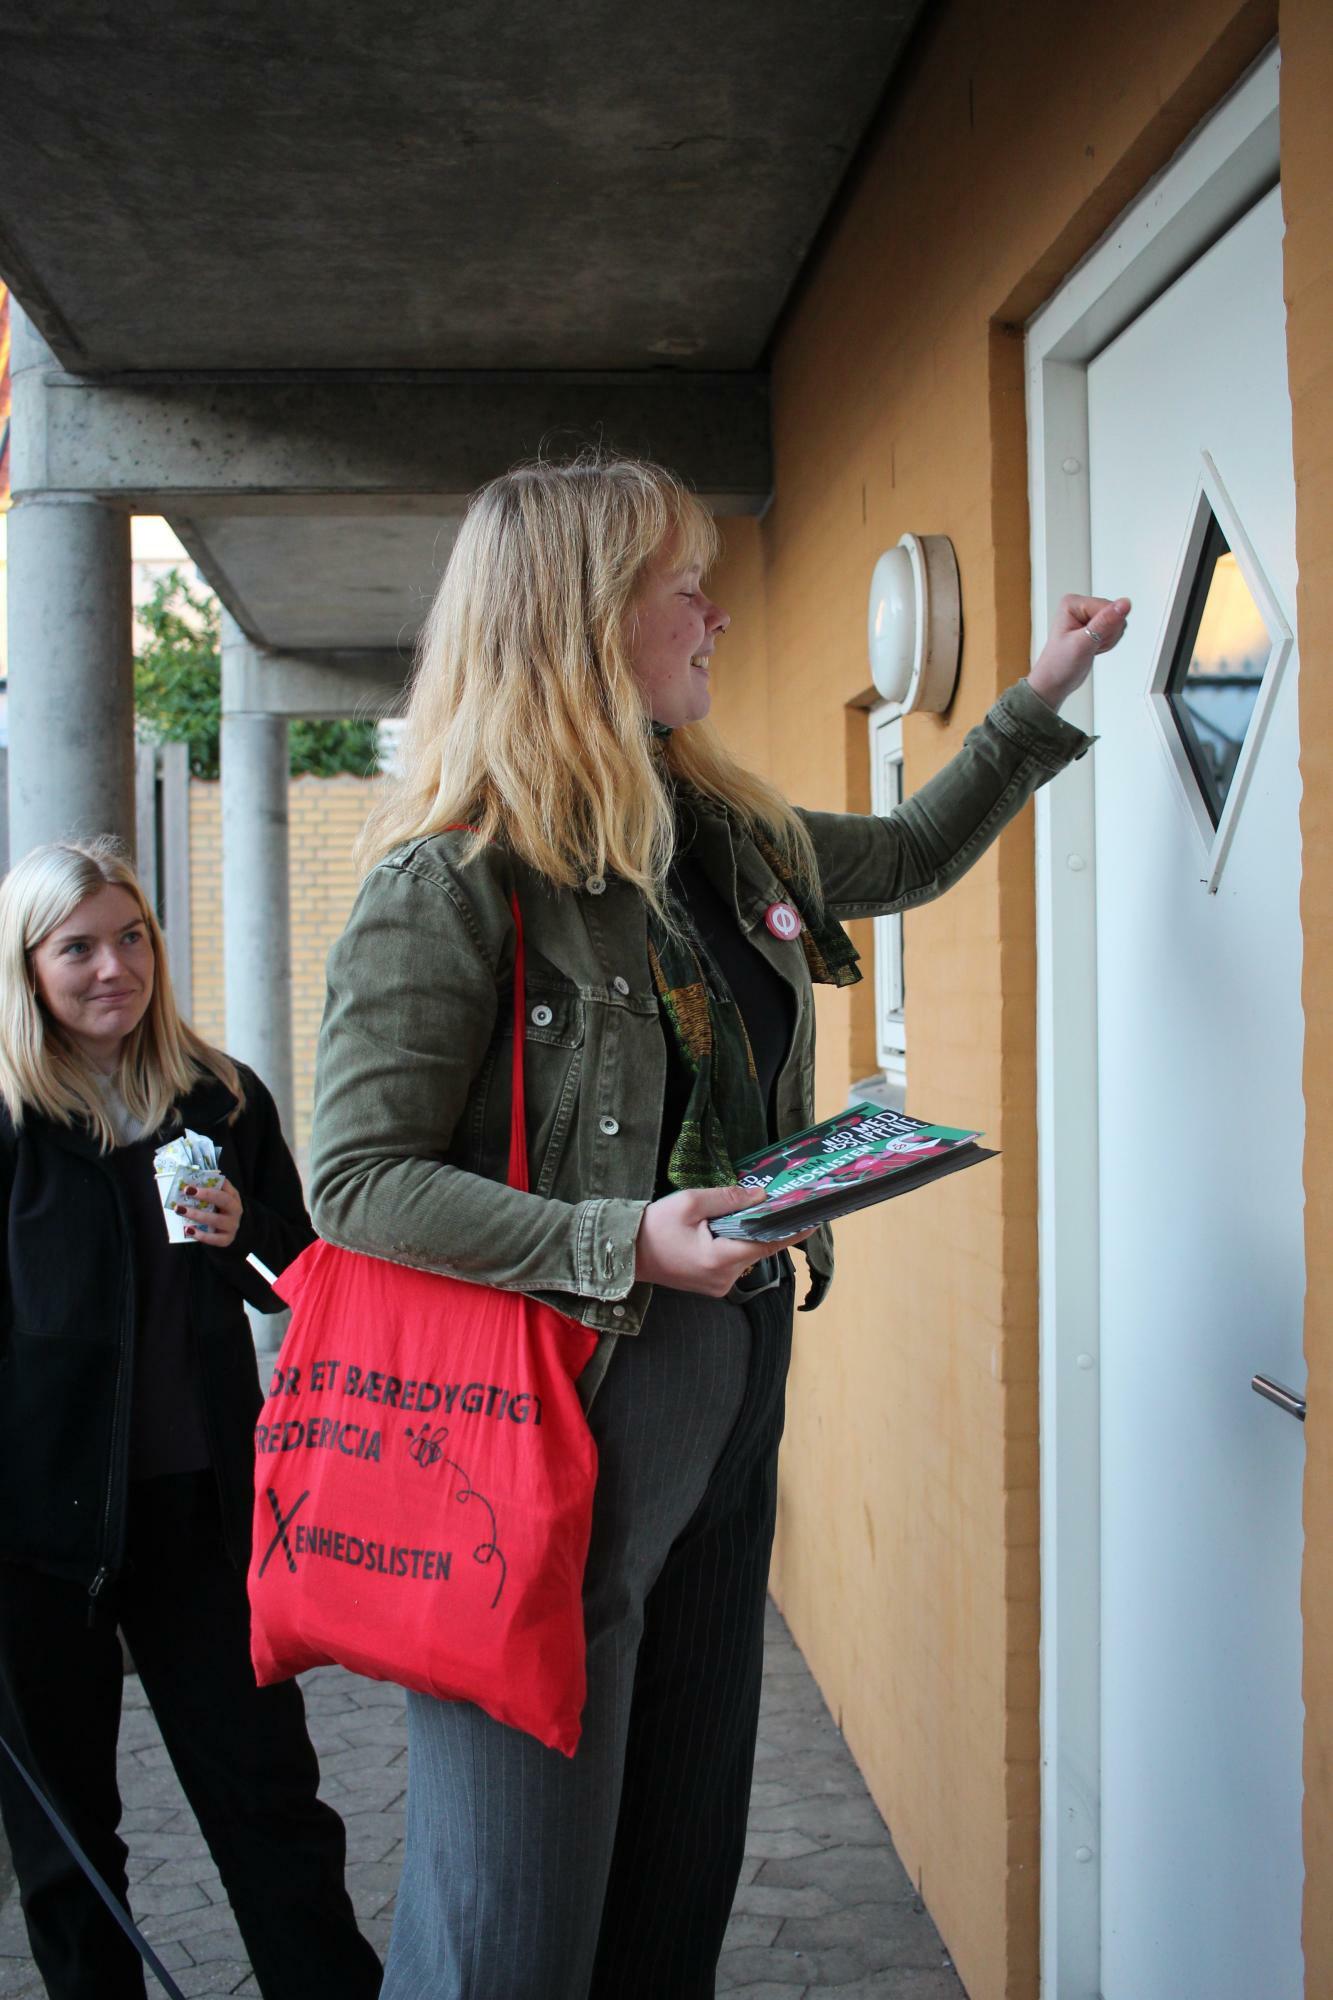 ノルウェーやスウェーデンでは伝統的な選挙中の戸別訪問だが、デンマークではまだ新しい。RGUは選挙運動の一環として戸別訪問という新しい手法を採用した青年部だ　Emmeline Brackman撮影